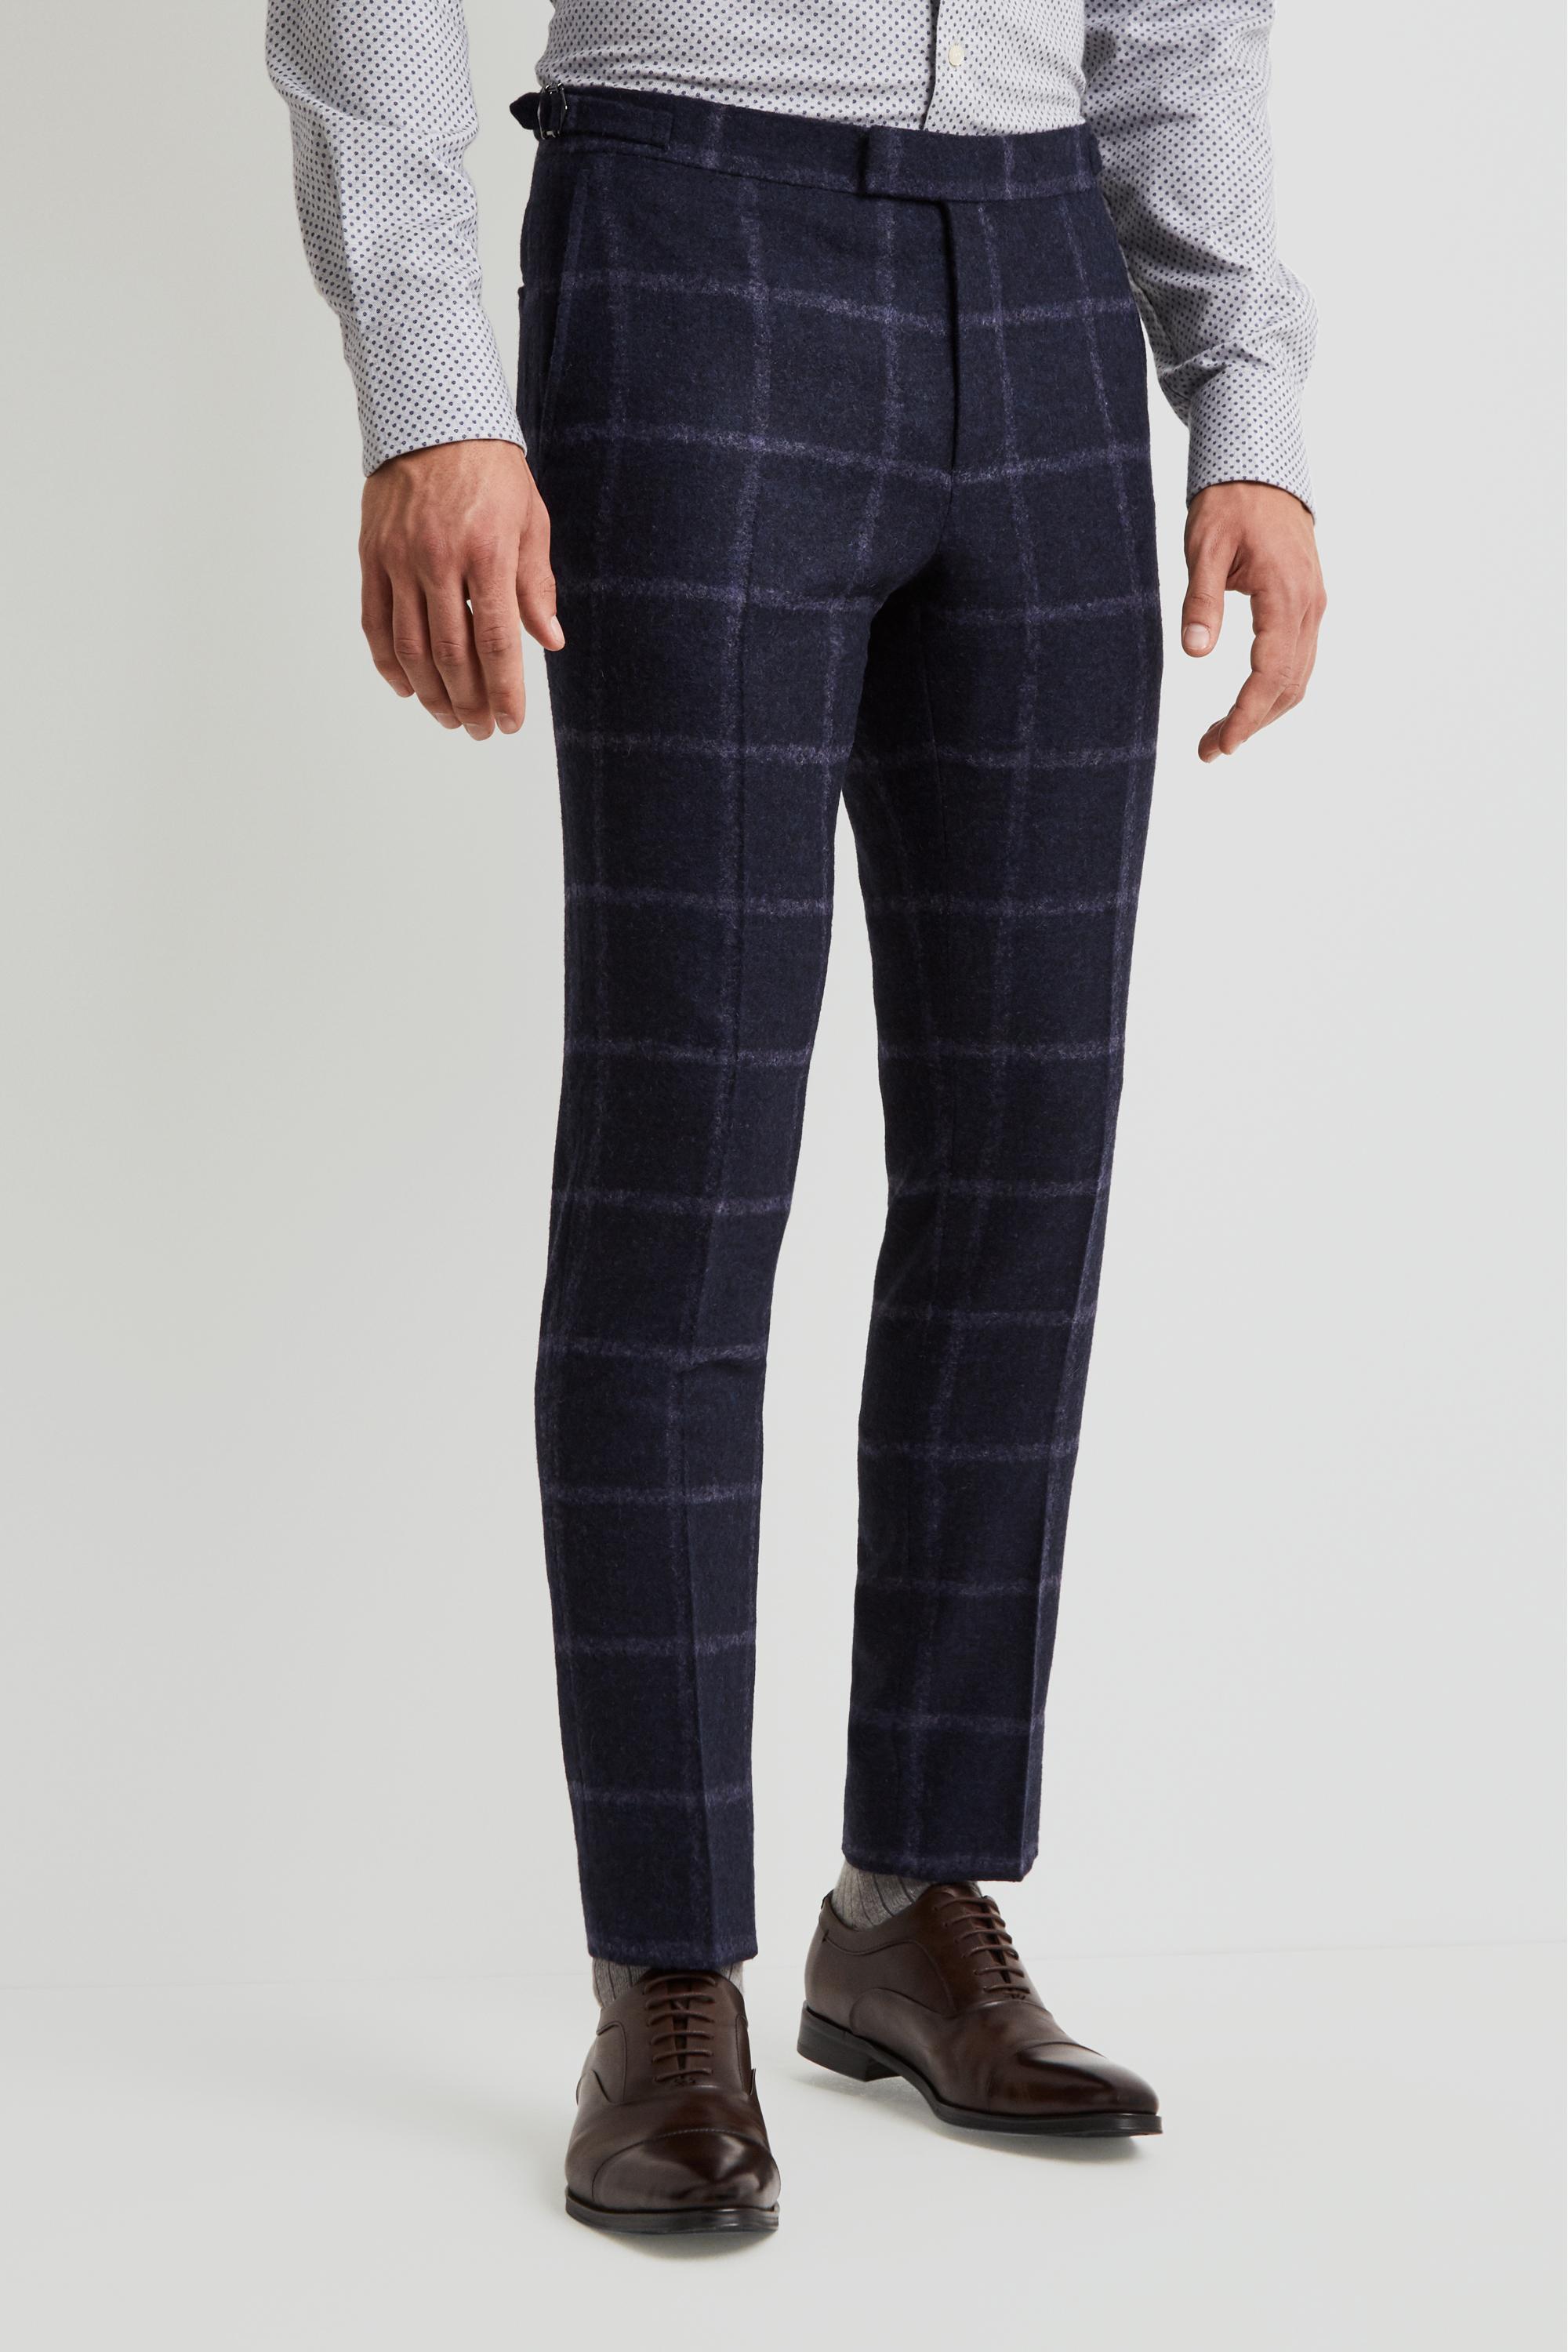 Moss Bros Wool Skinny Fit Ferla Blue Windowpane Trousers for Men - Lyst